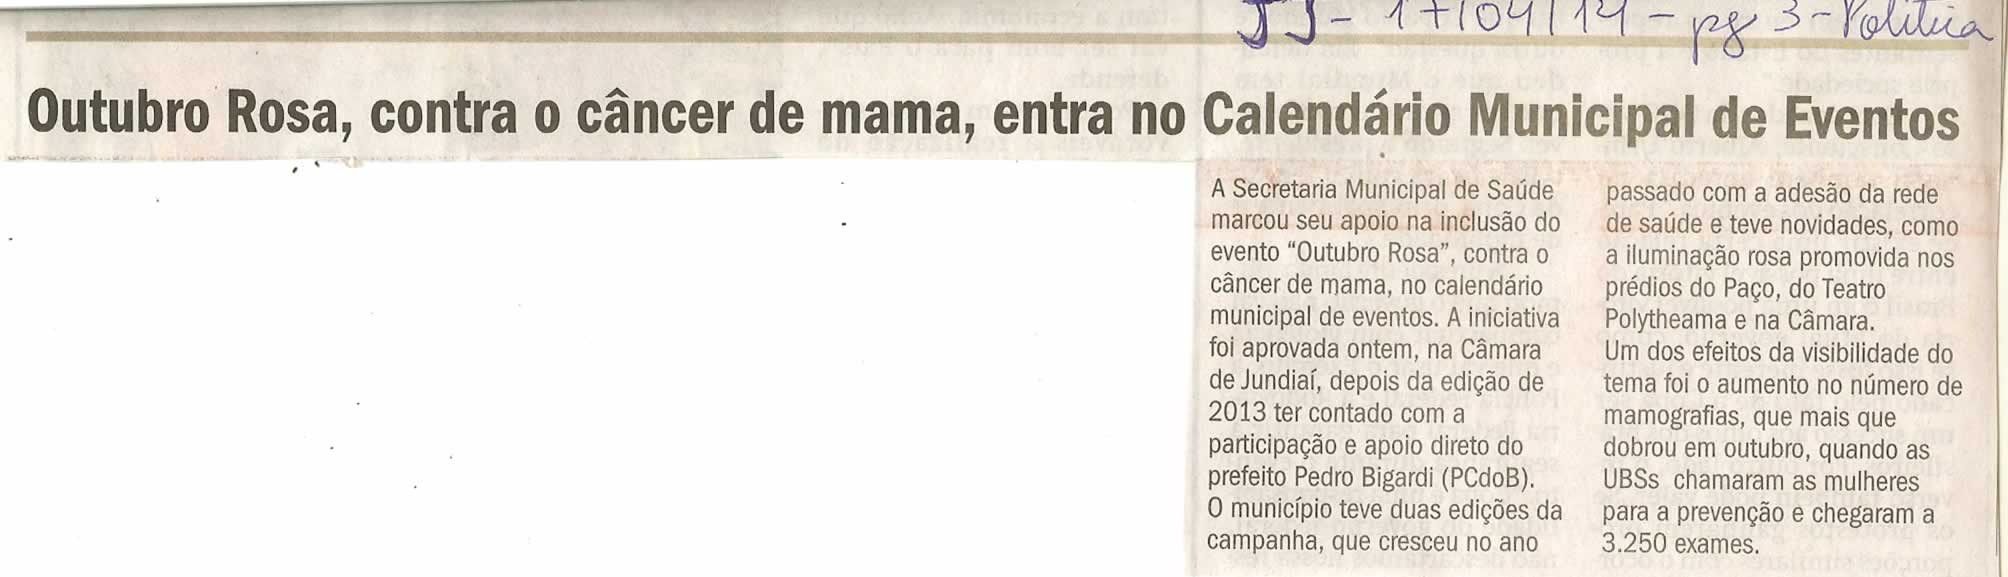 JJ - 17/04/14 - pg 4Outubro Rosa, contra o cancer de mama, entra no Calendário Municipal de Eventos - - Política - 